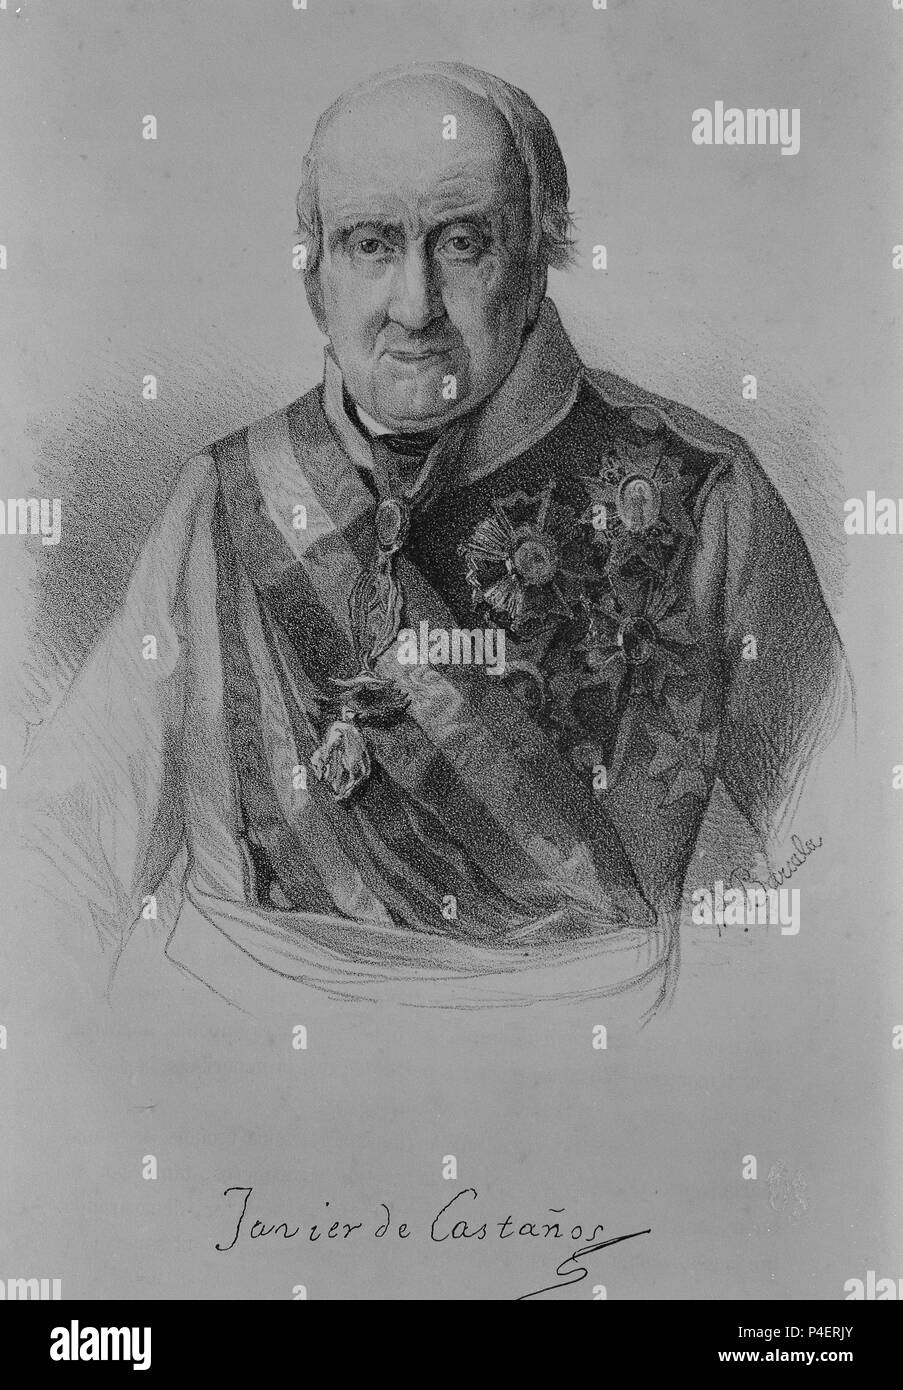 RETRATO DE JAVIER DE CASTAÑOS - GRABADO S XIX. Author: Vicente Lopez Portaña (1772-1850). Location: MUSEO ROMANTICO-GRABADO, MADRID, SPAIN. Stock Photo